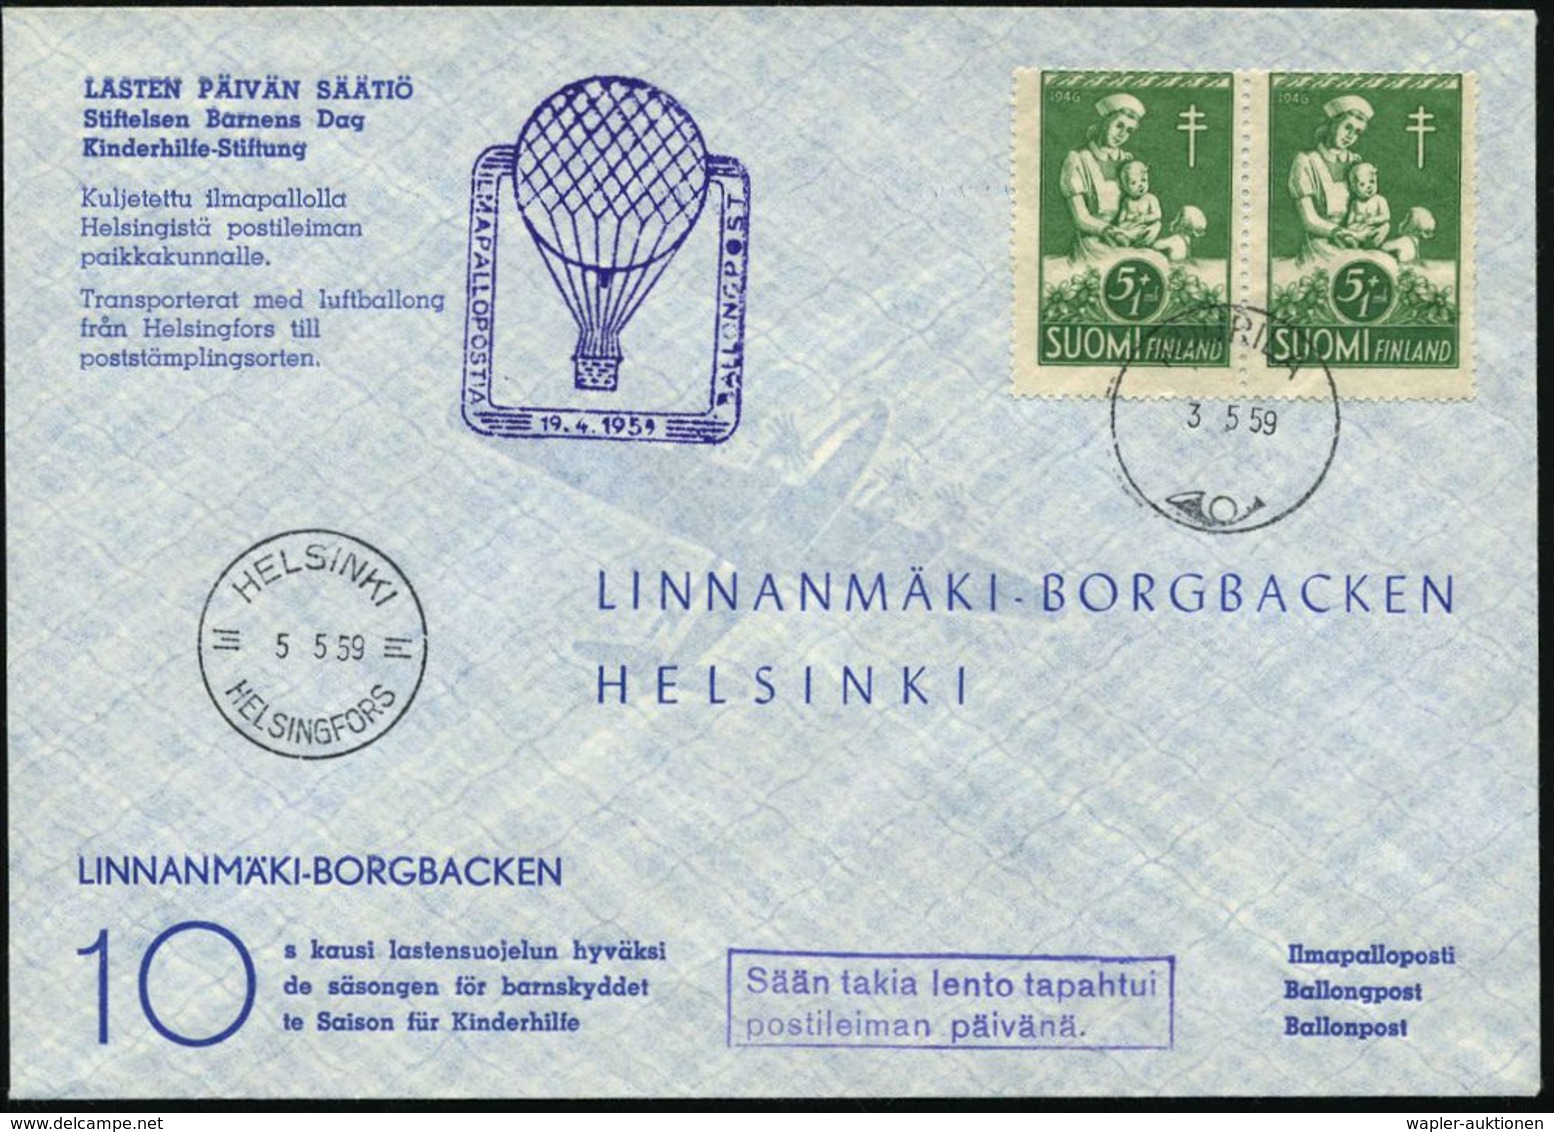 TUBERKULOSE / TBC-VORSORGE : FINNLAND 1959 (3.5.) 5 Mk + 1Mk. Anti-Tuberkulose, Reine MeF: Paar = Kinder-Krankenschester - Malattie